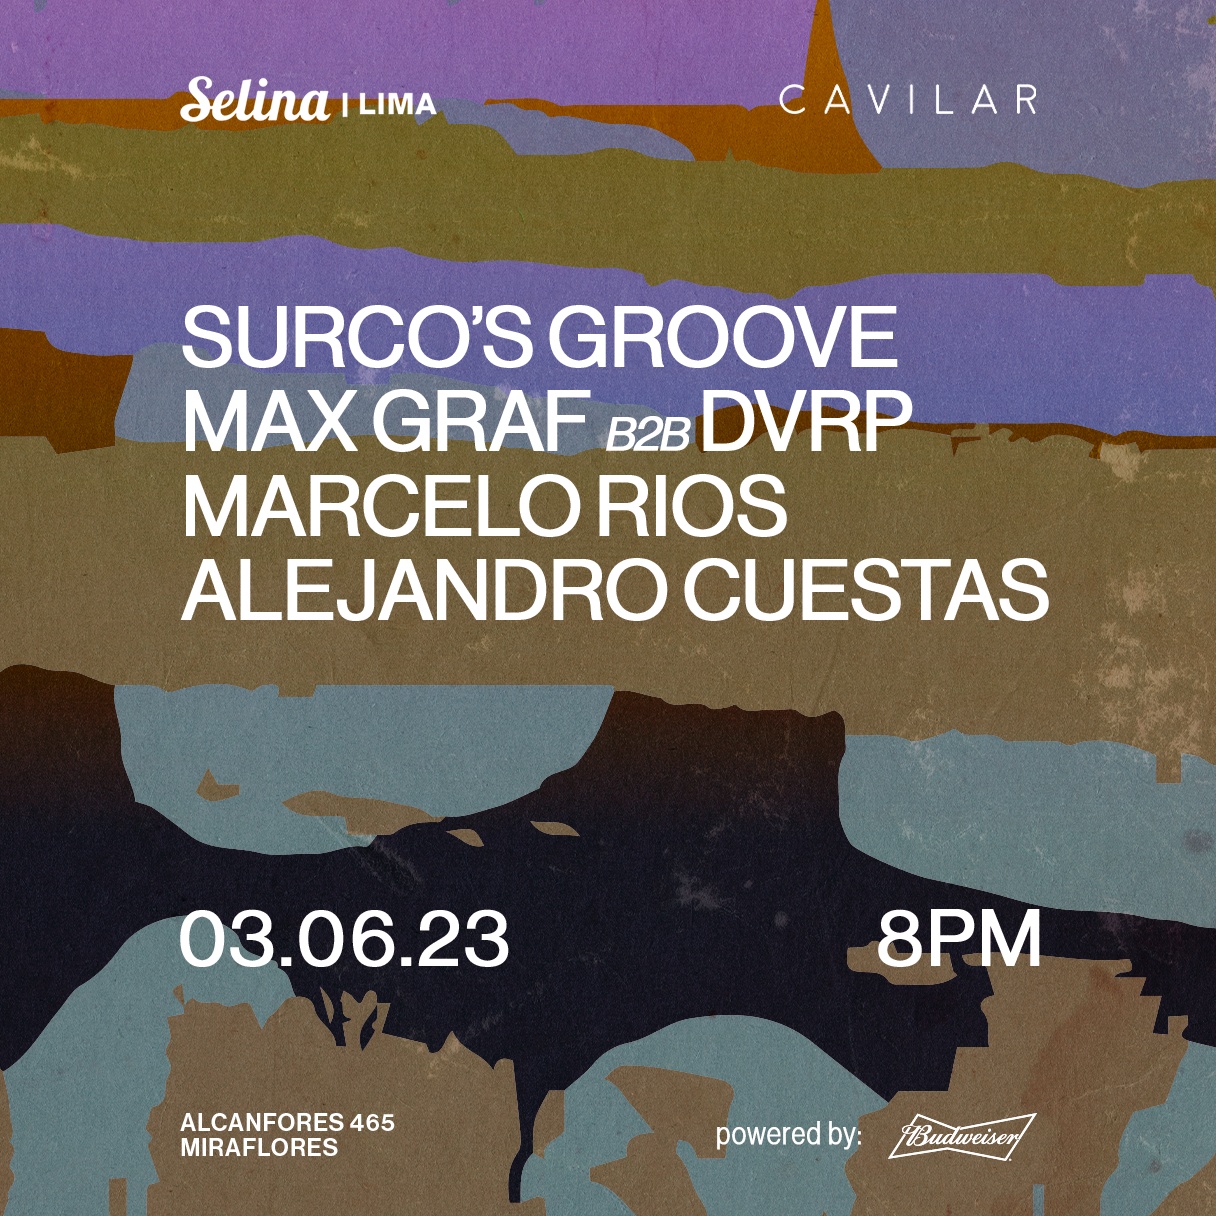 Cavilar x Selina pres. Surco's Groove, Max Graf b2b DVRP, Marcelo Rios, Alejandro Cuestas - Página frontal